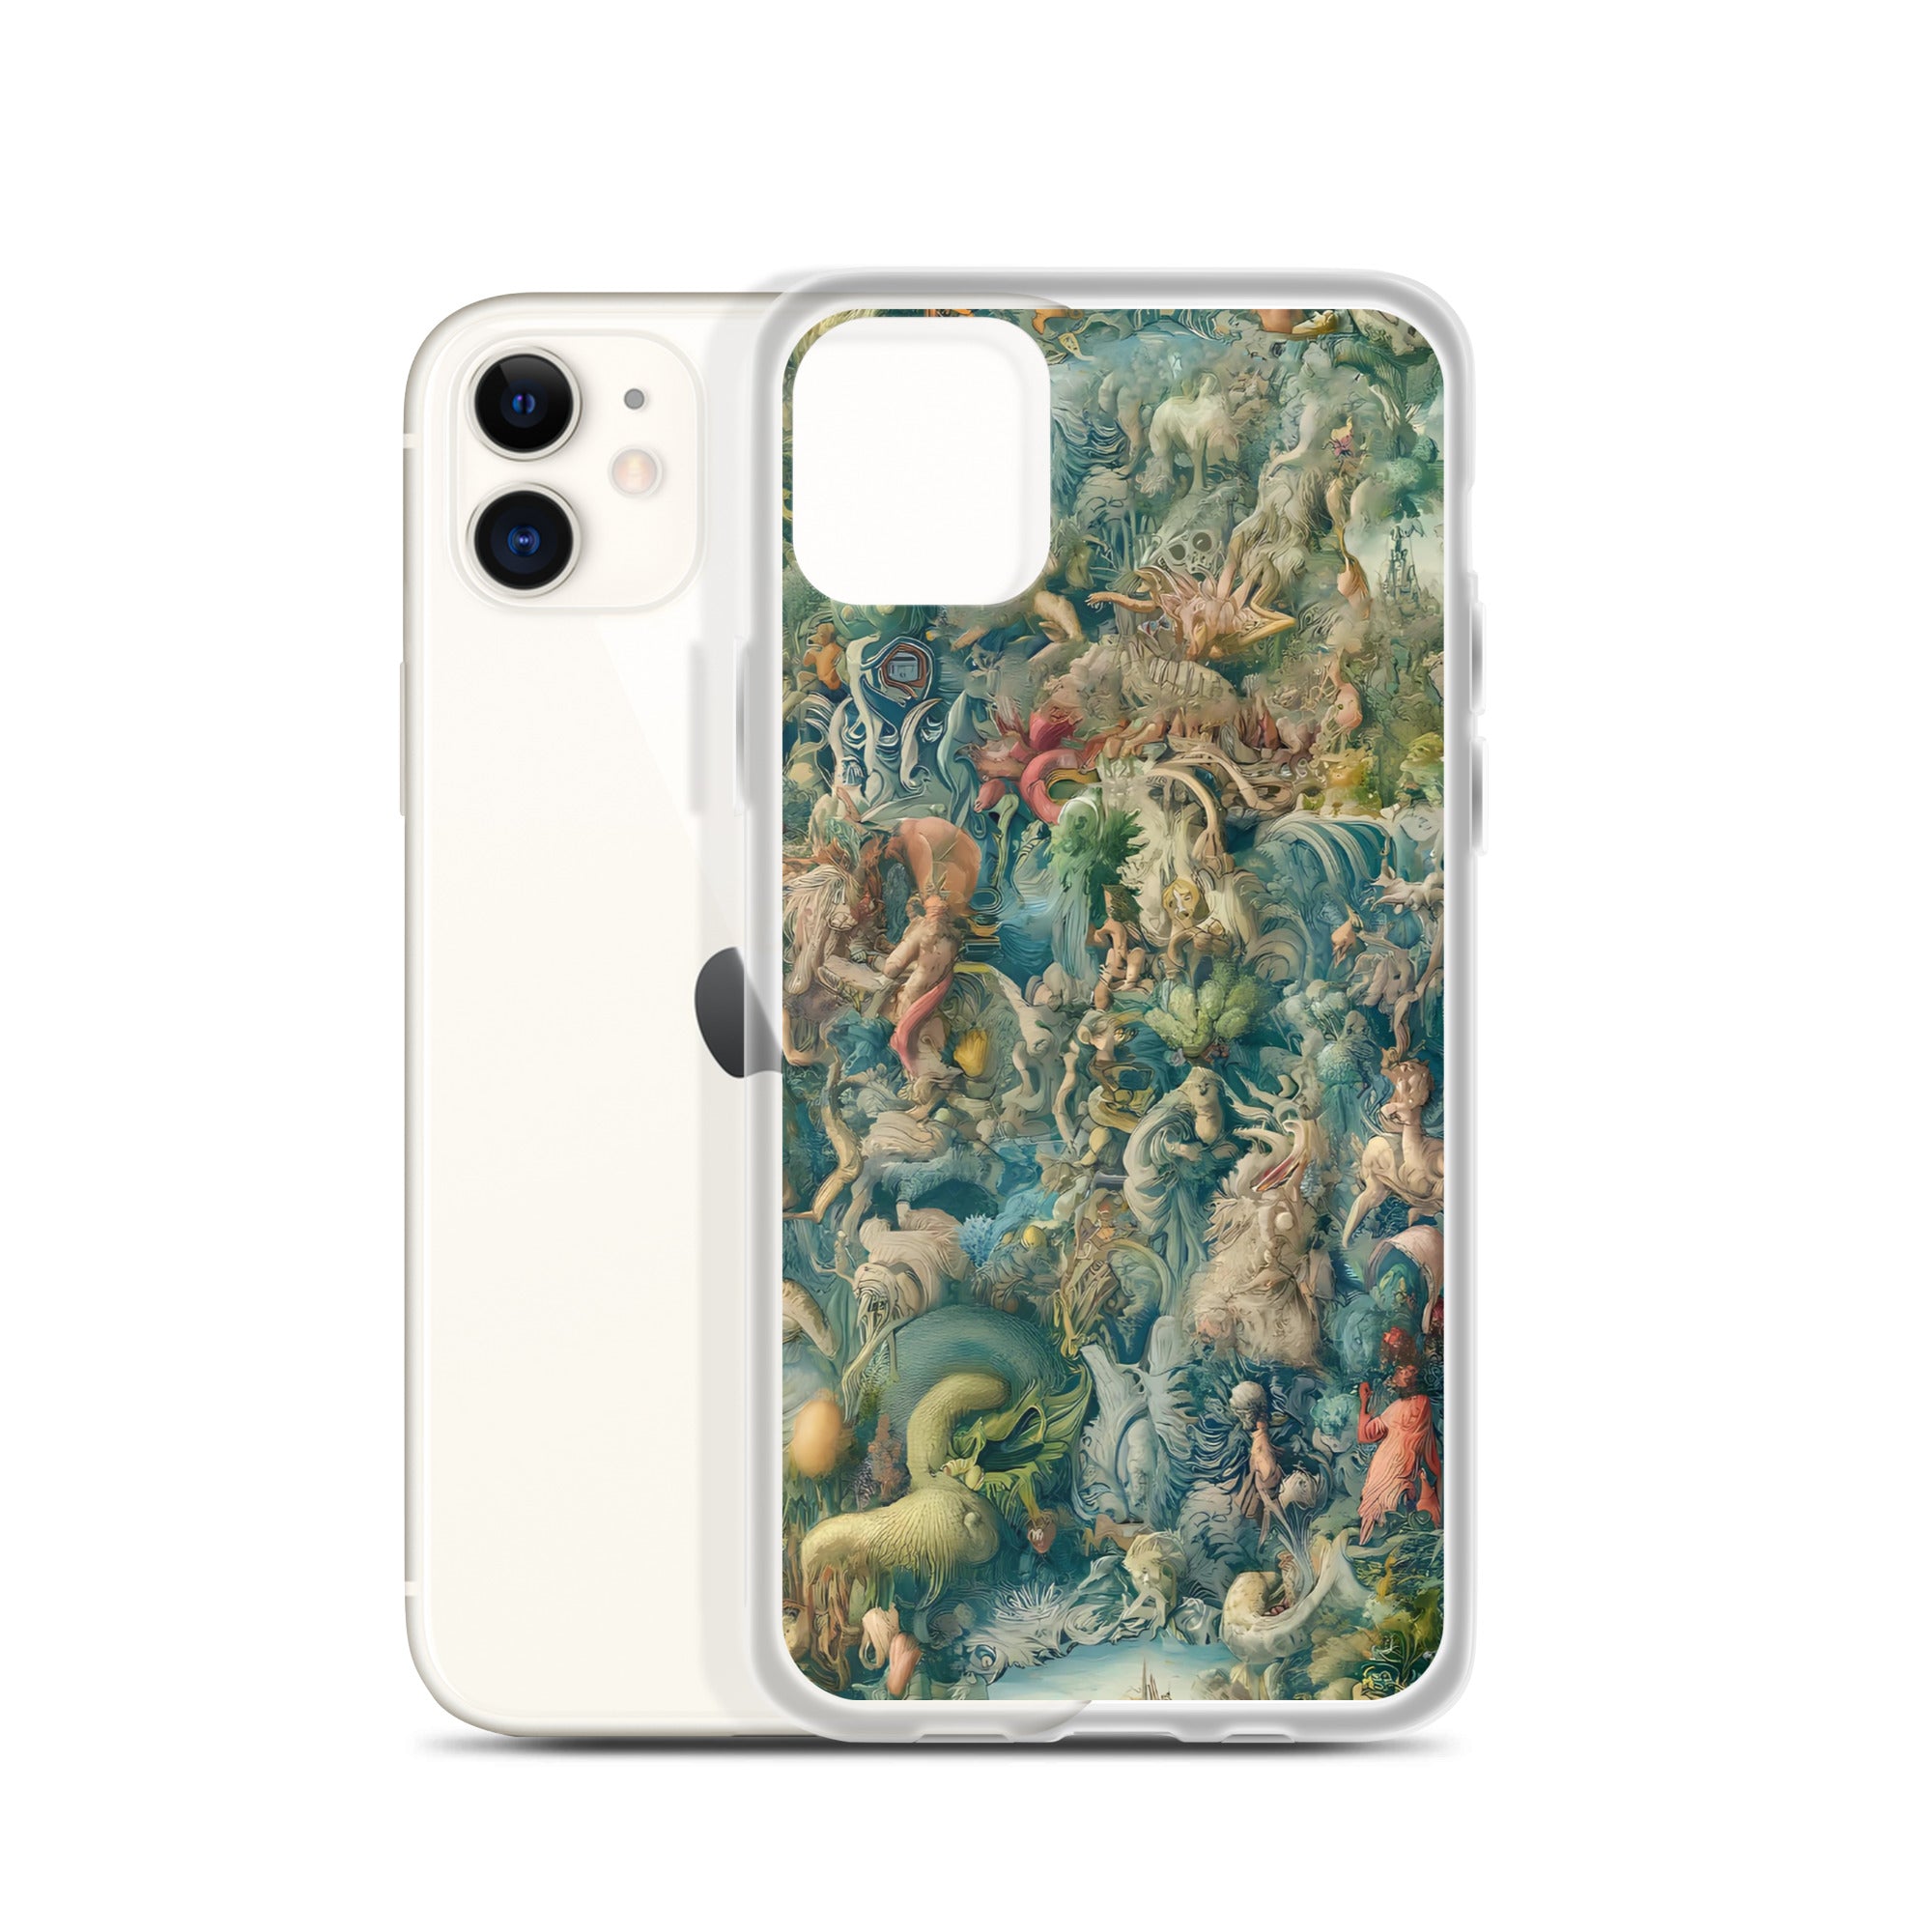 Hieronymus Bosch „Der Garten der Lüste“, berühmtes Gemälde, iPhone®-Hülle | Transparente Kunsthülle für iPhone®